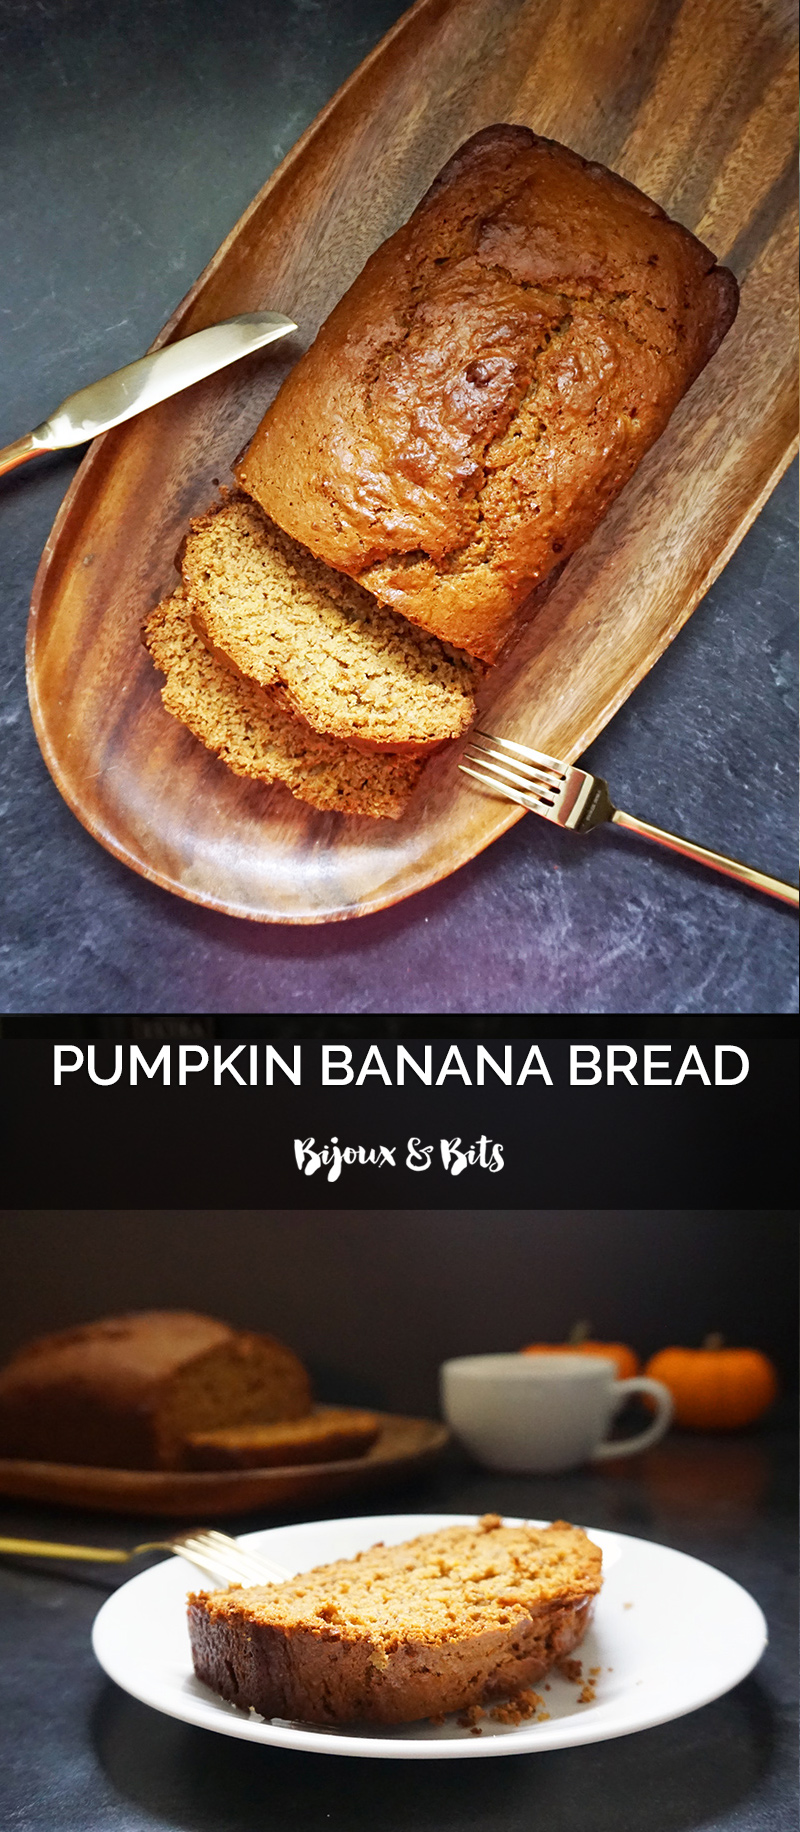 Pumpkin banana bread recipe from @bijouxandbits